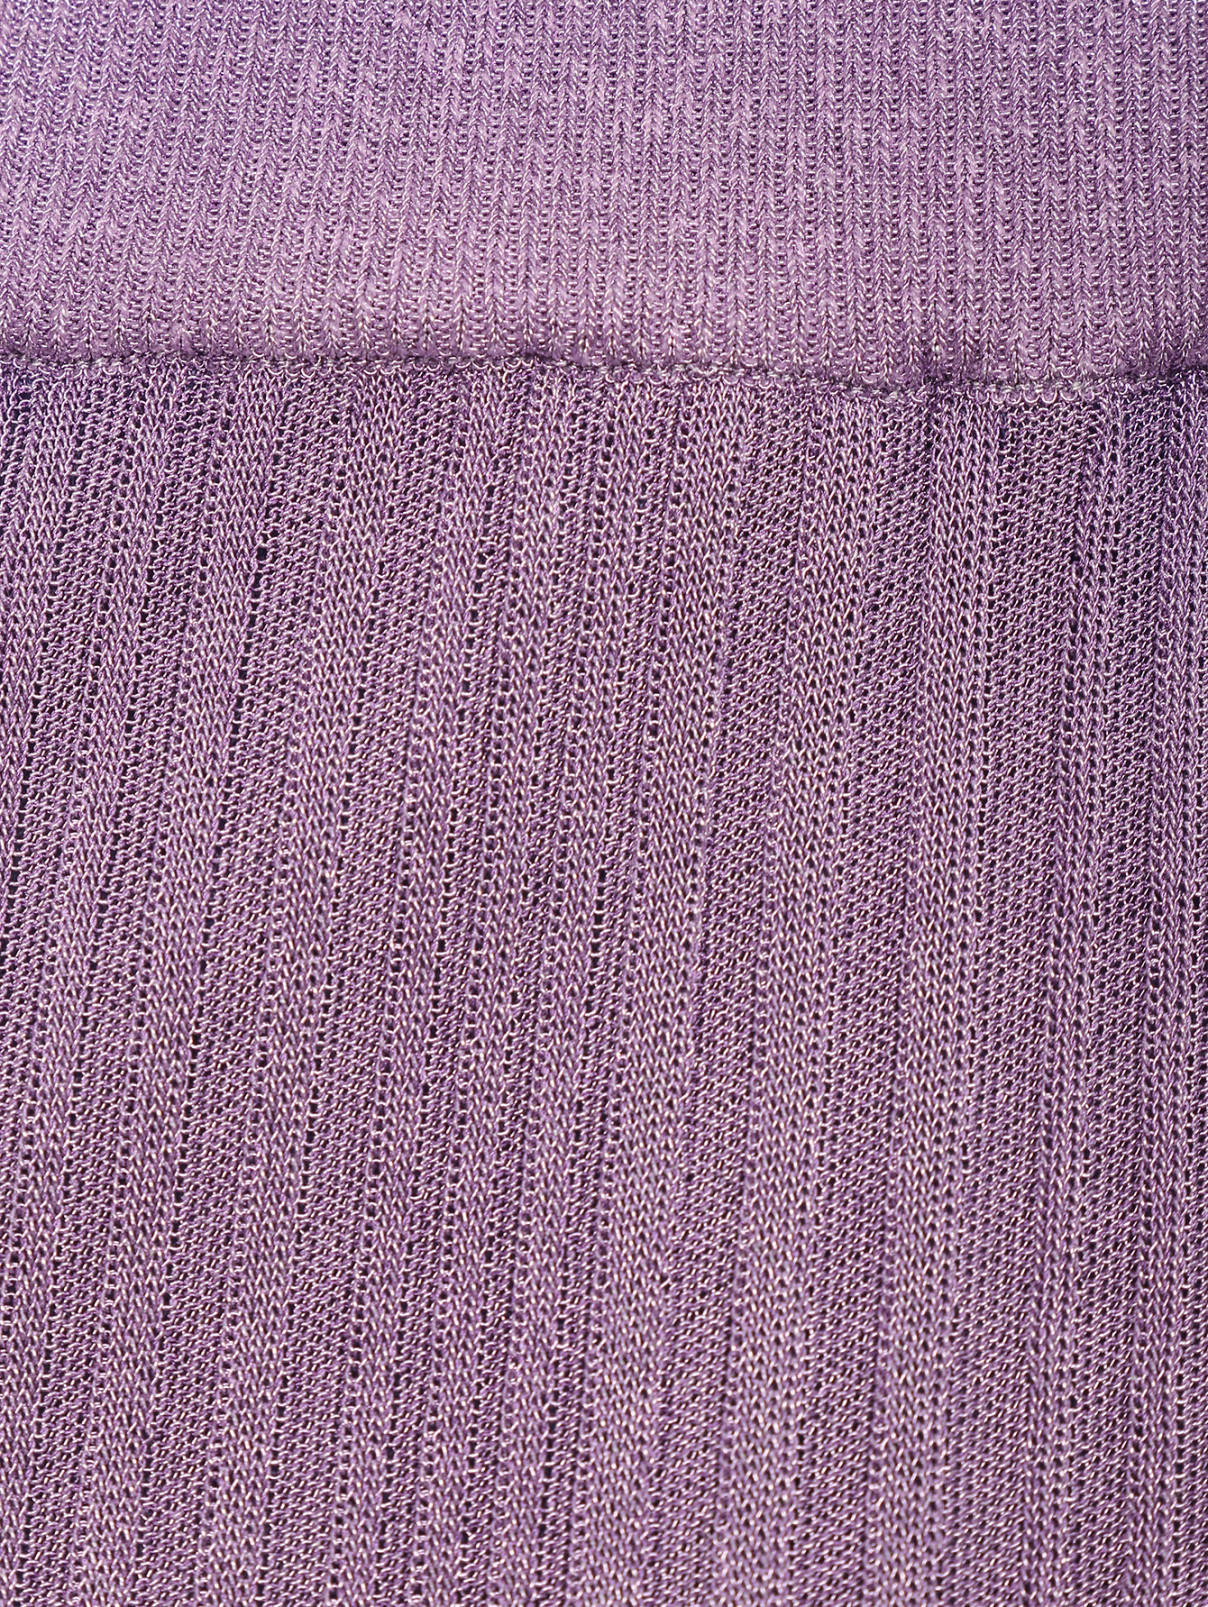 Юбка из смешанной вискозы на резинке Dorothee Schumacher  –  Деталь1  – Цвет:  Фиолетовый